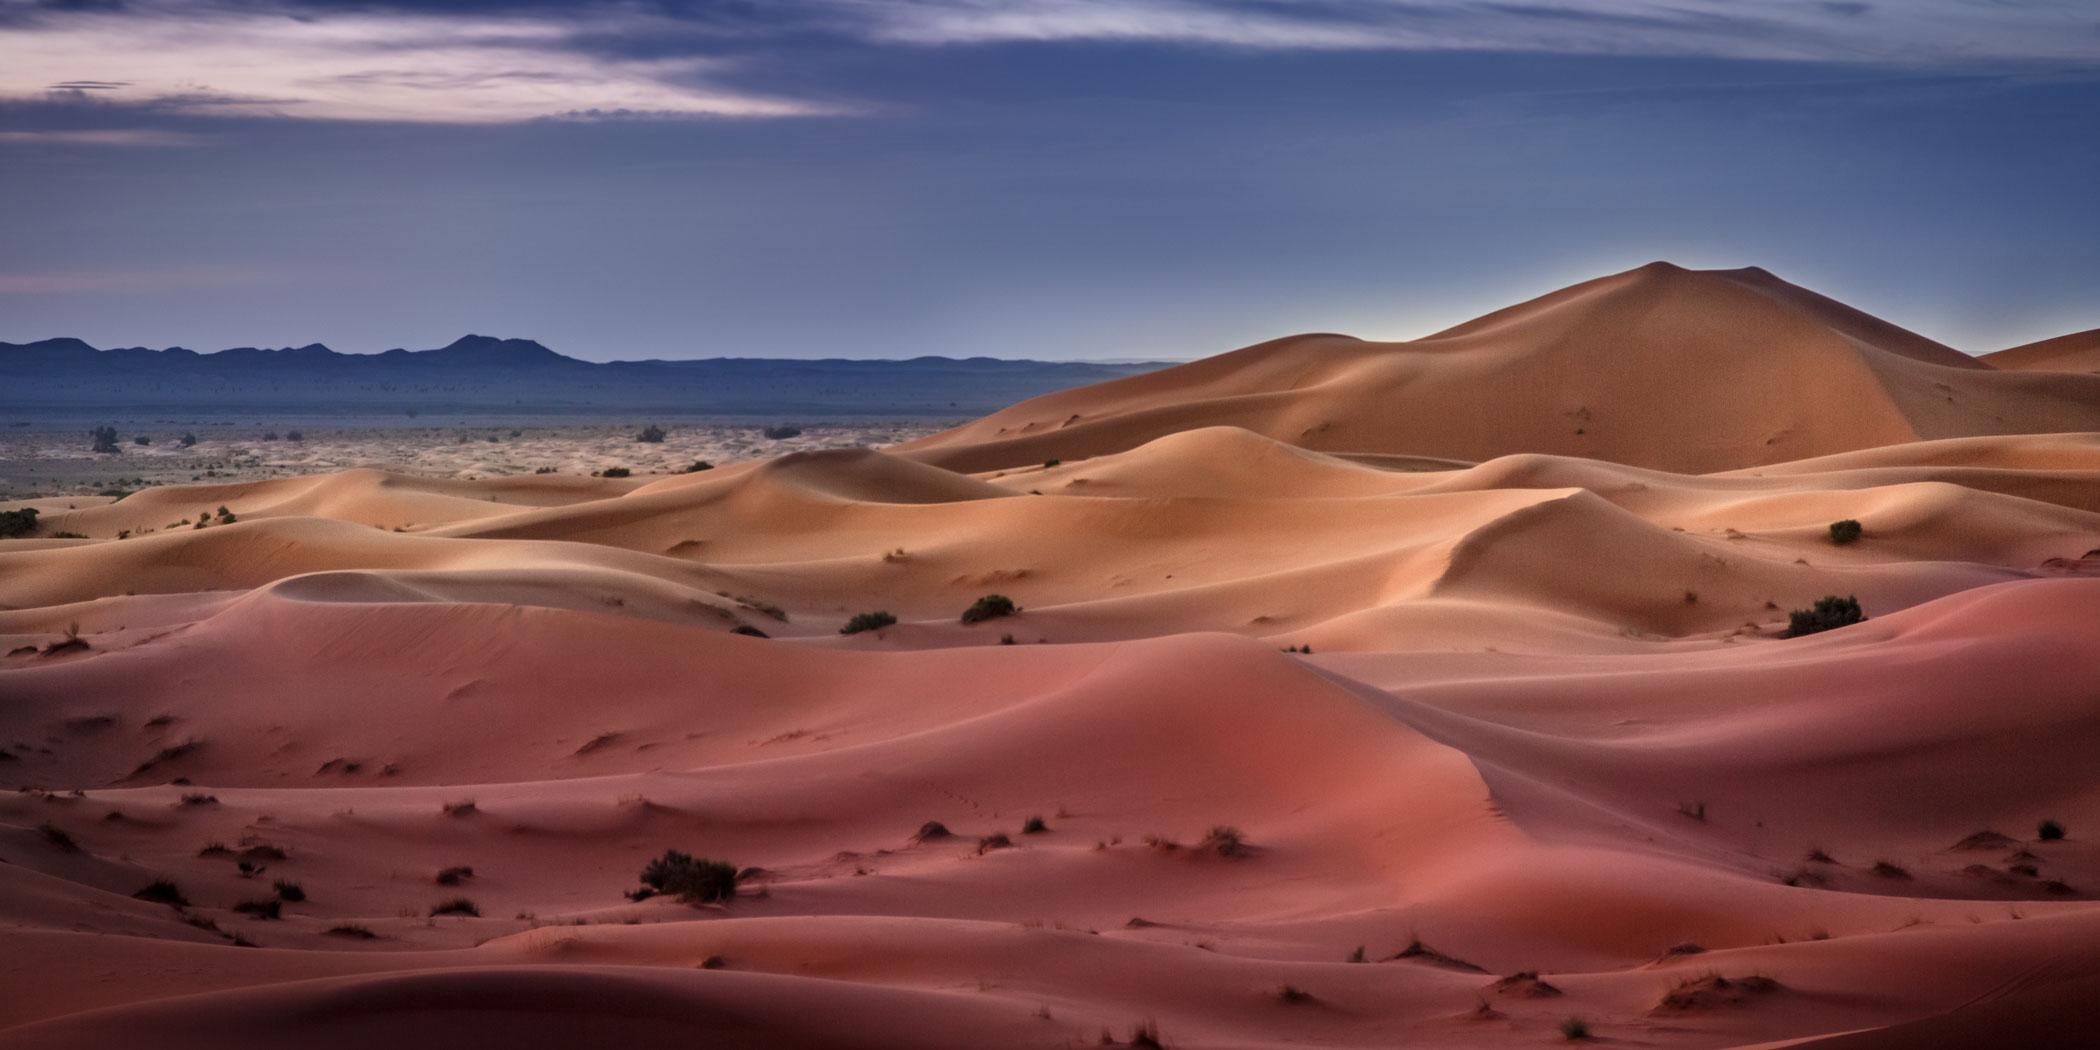 Sand dunes in the Sahara desert (Photo: Adobe Stock)